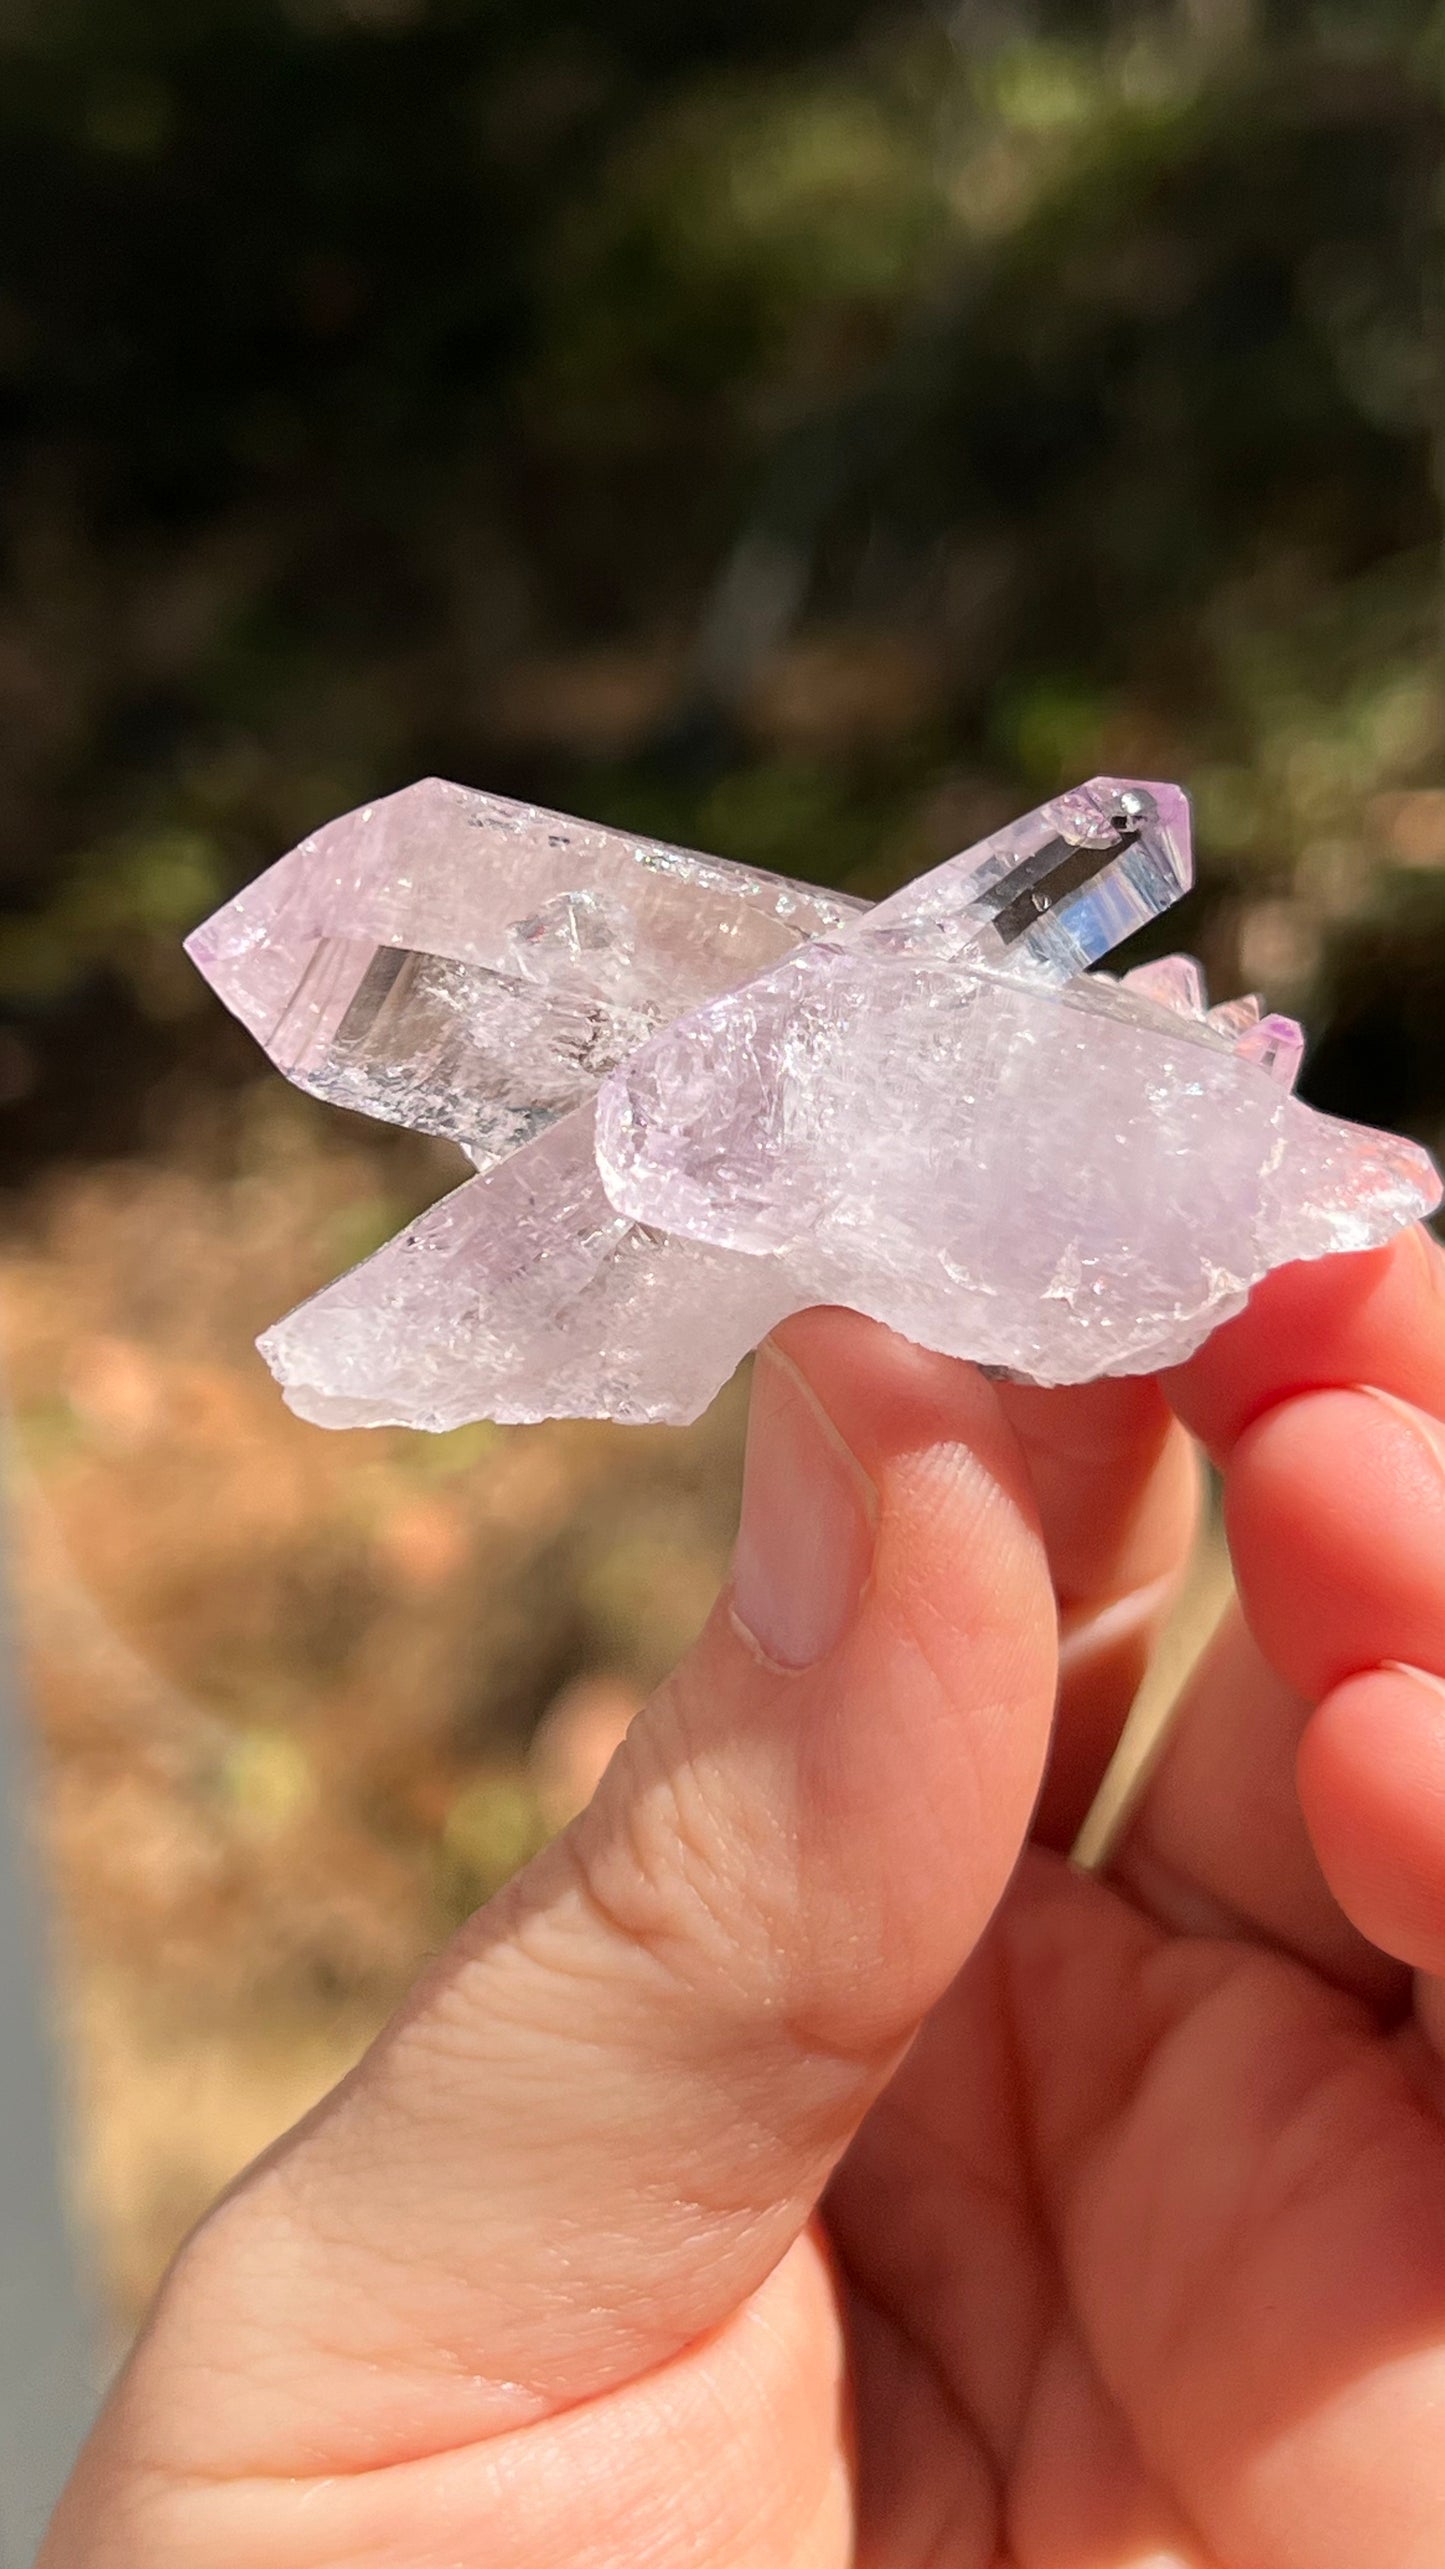 Amethyst Crystal, Veracruz Mexico